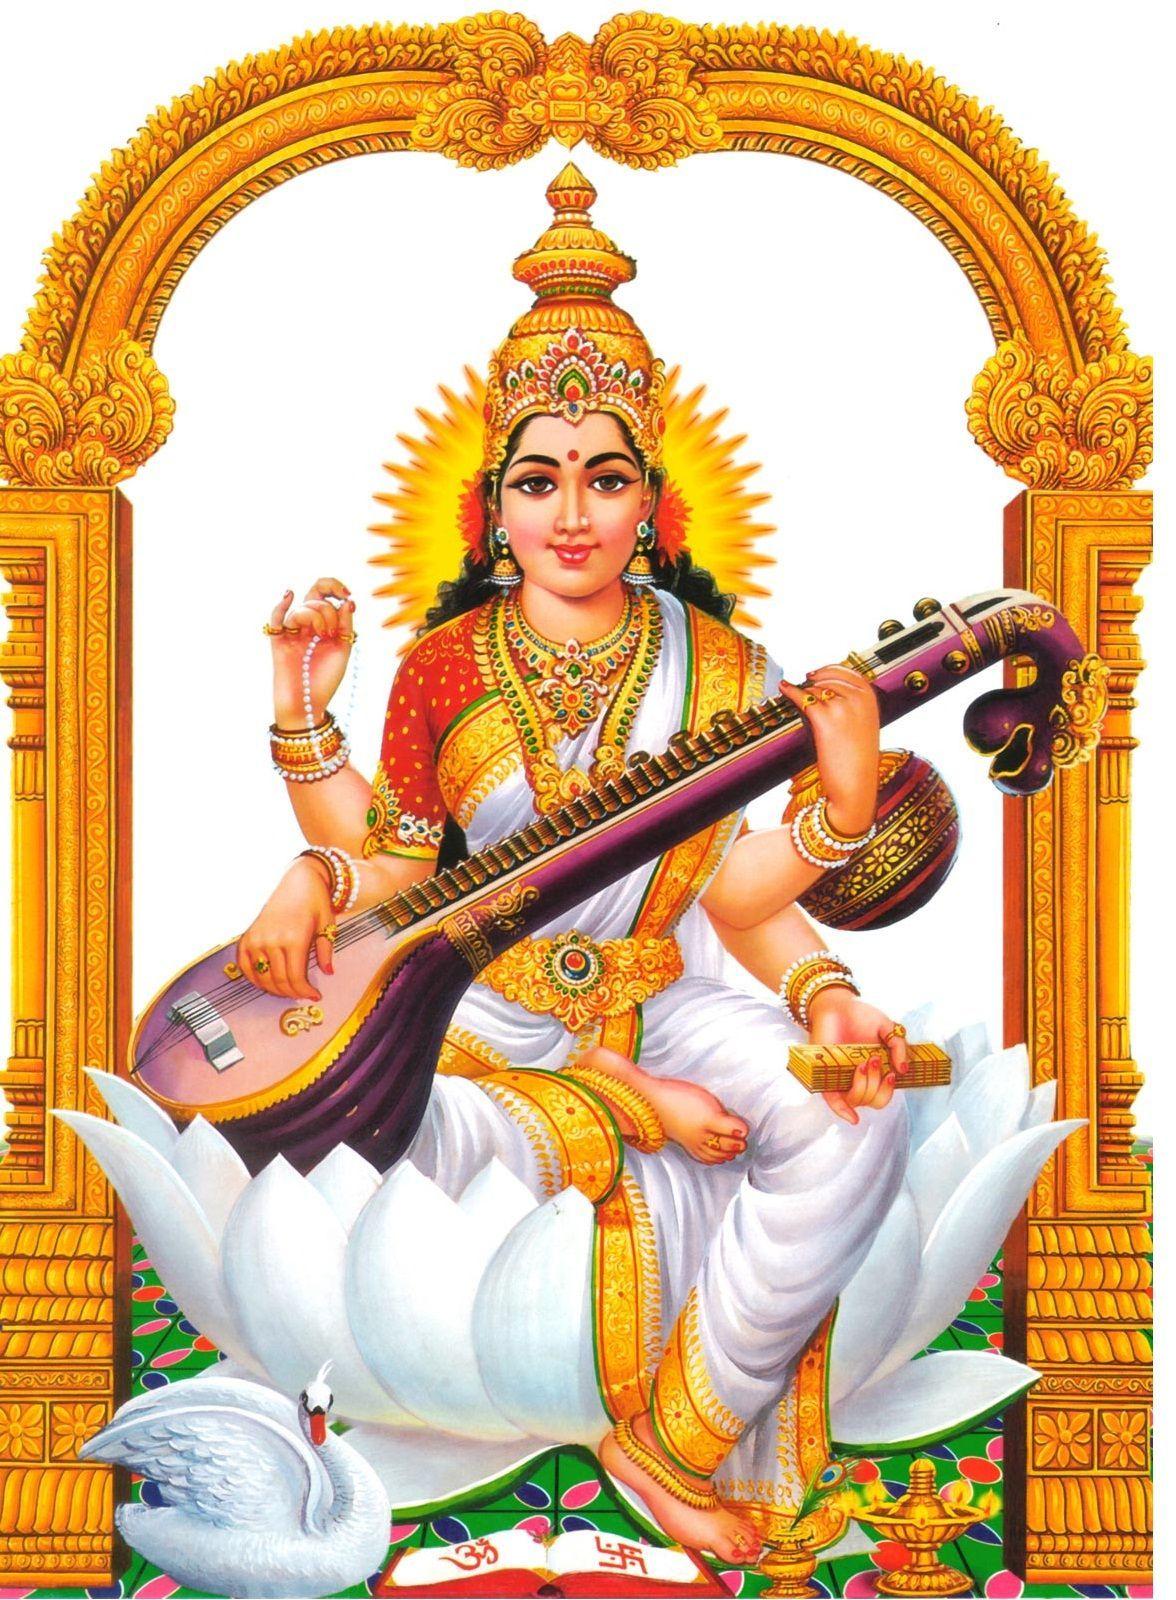 Saraswati devi 1321 Hindu God Wallpaper for Mobile Phones